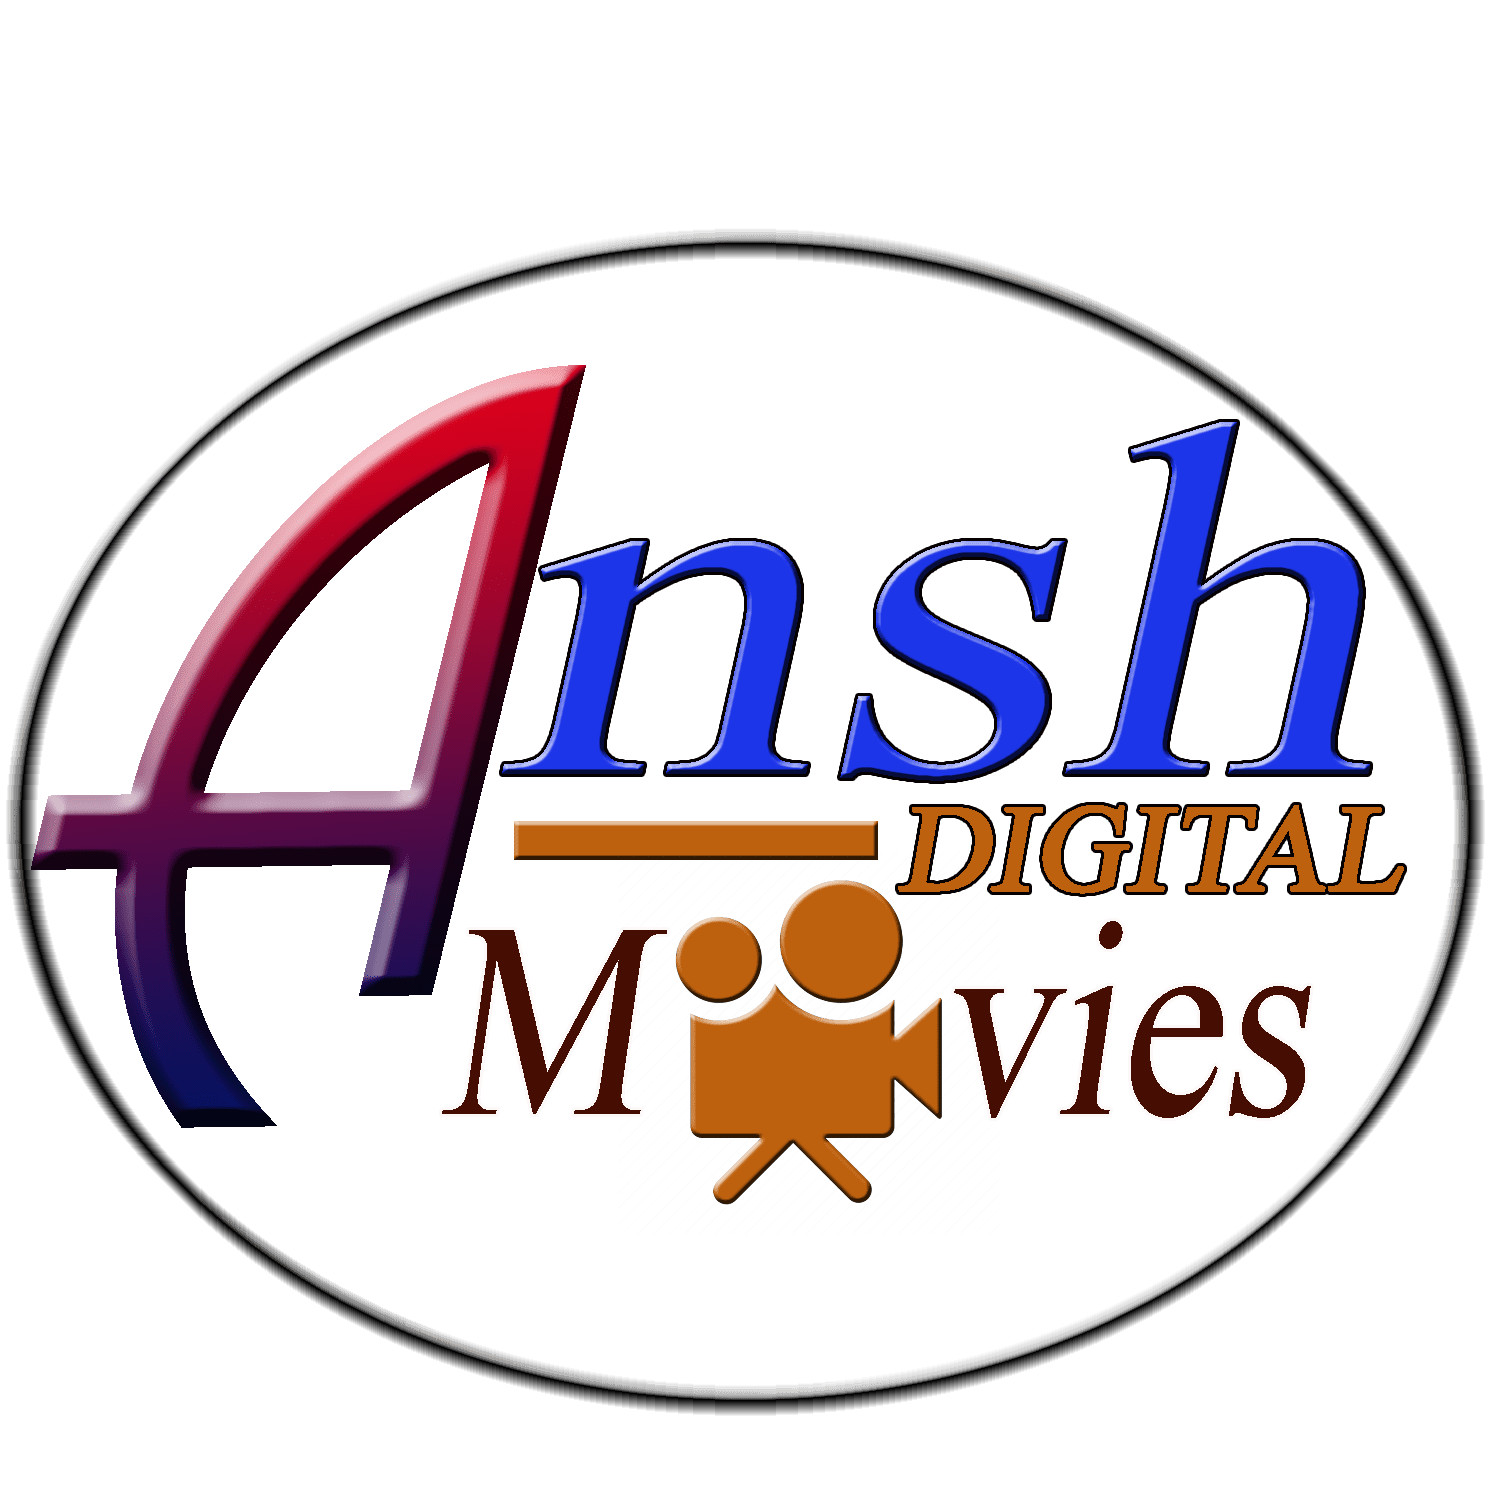 ANSH 3D DIGITAL STUDIO